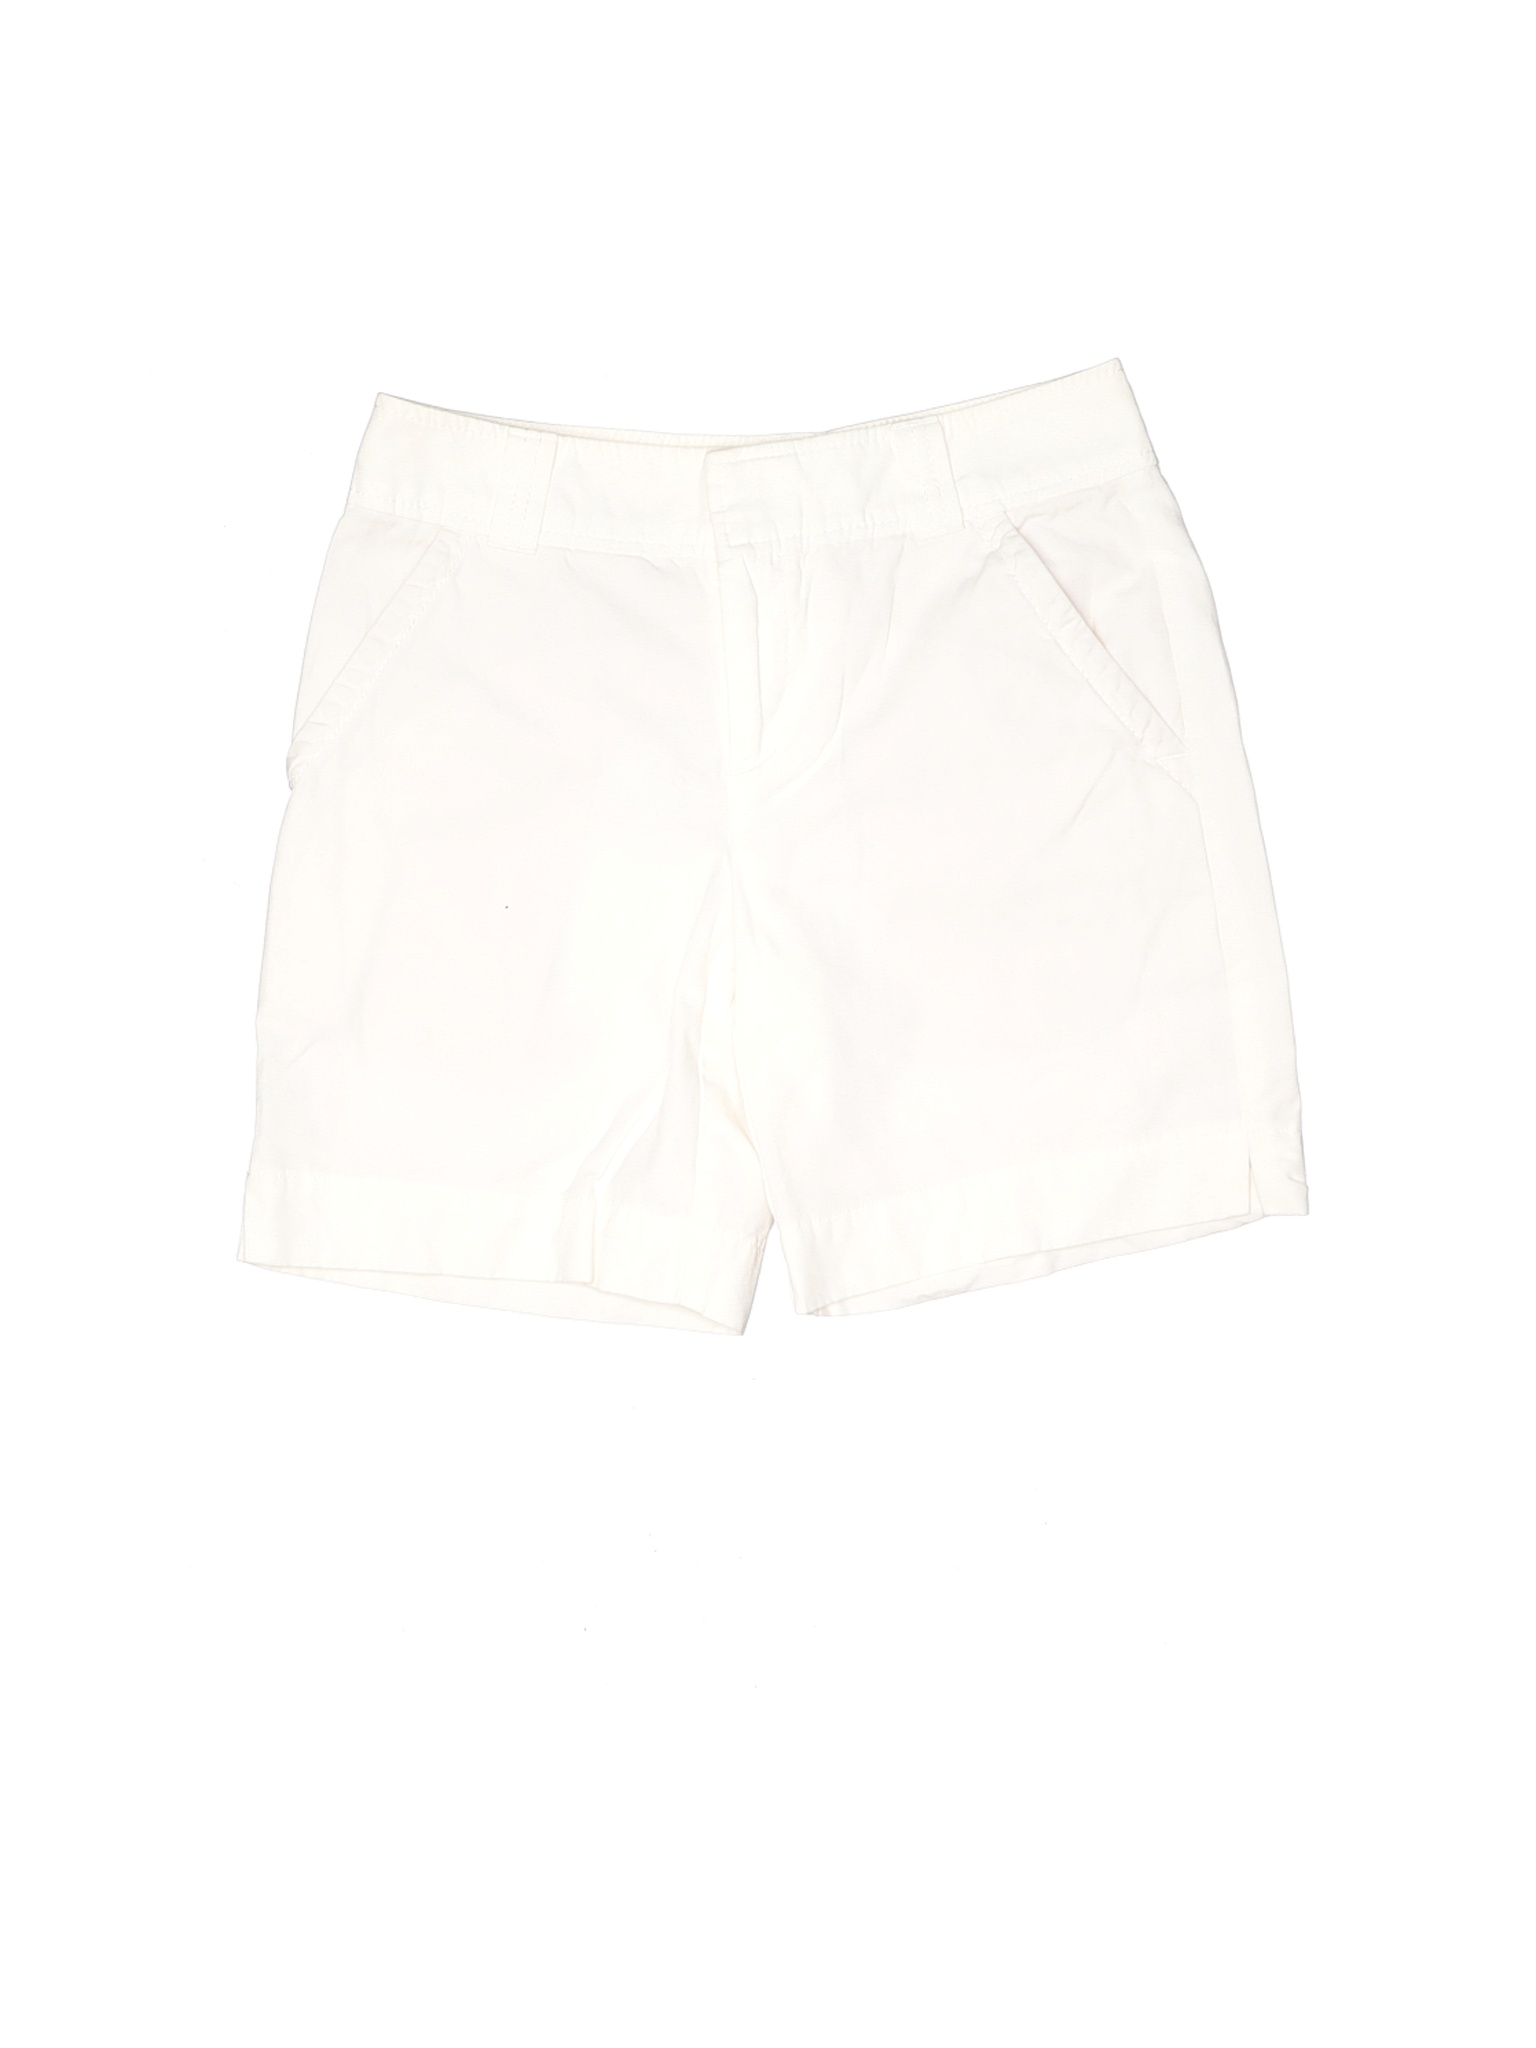 Lilly Pulitzer Women White Shorts 0 | eBay